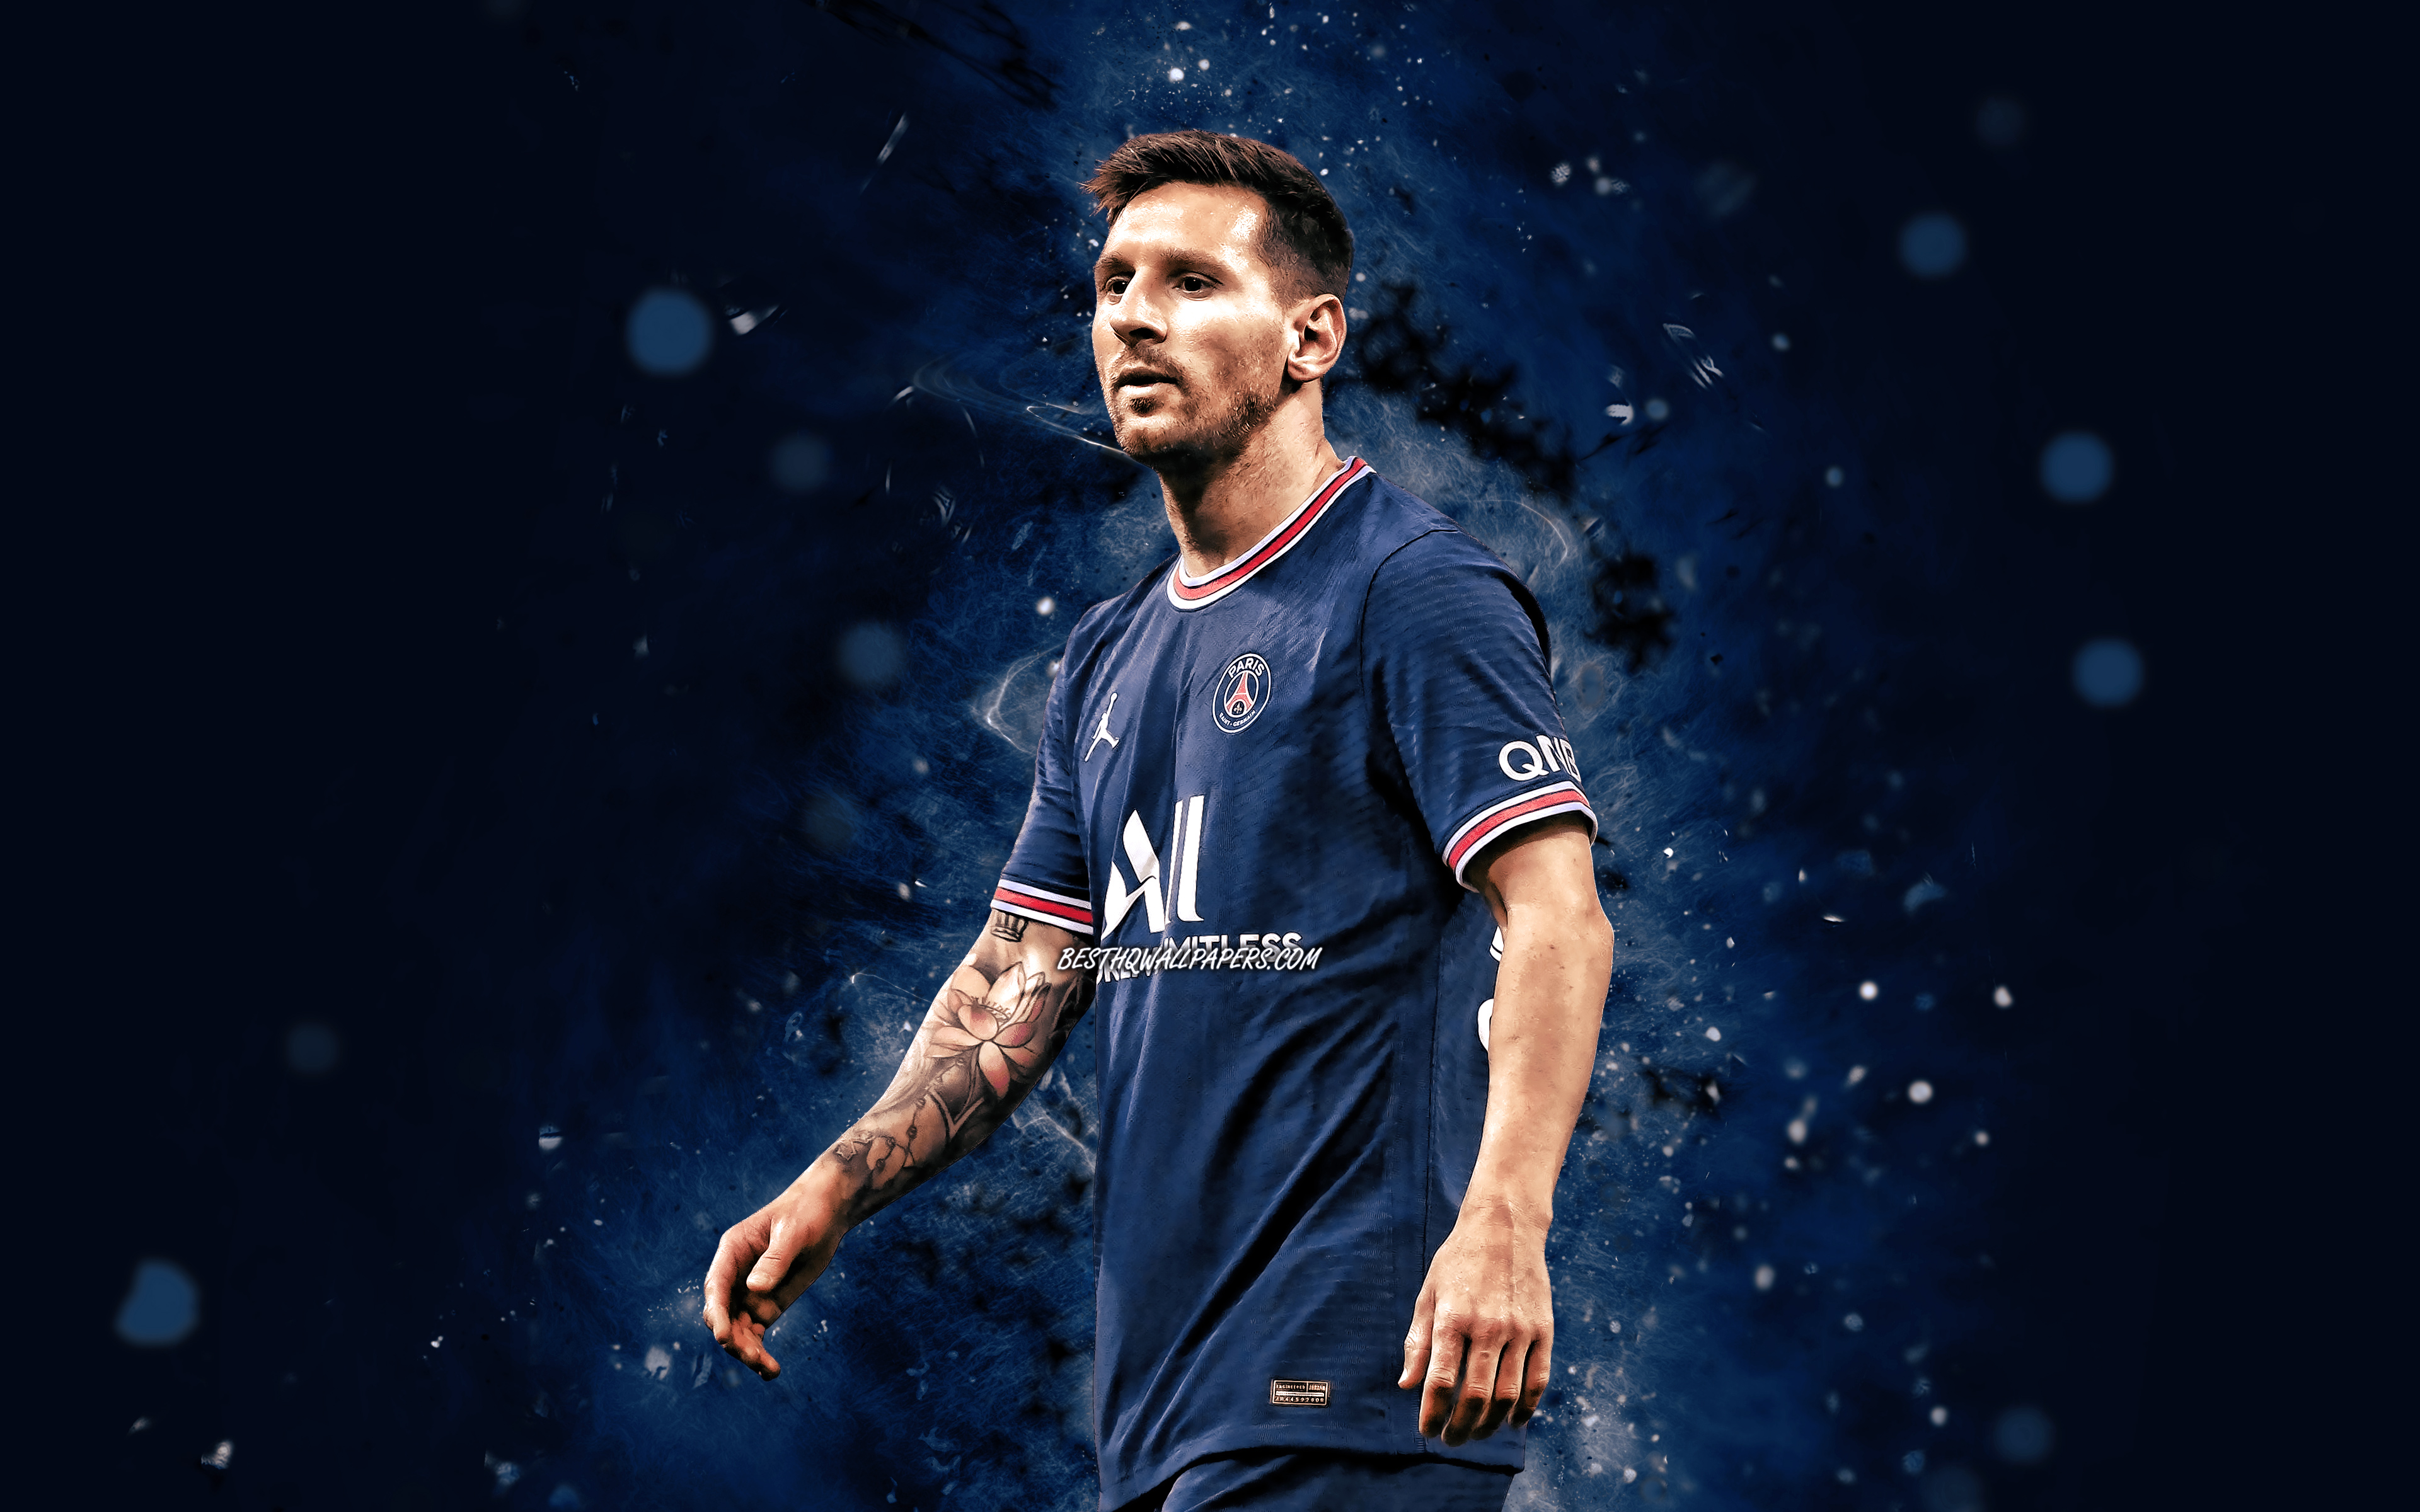 Ảnh Messi: Hãy chiêm ngưỡng và cảm nhận sự tài năng của Messi thông qua những tấm ảnh hiếm có và đầy cảm hứng. Được coi là một trong những cầu thủ giỏi nhất thế giới, hình ảnh của Messi những lúc trên sân và ngoài sân đều đẹp đến ngỡ ngàng.